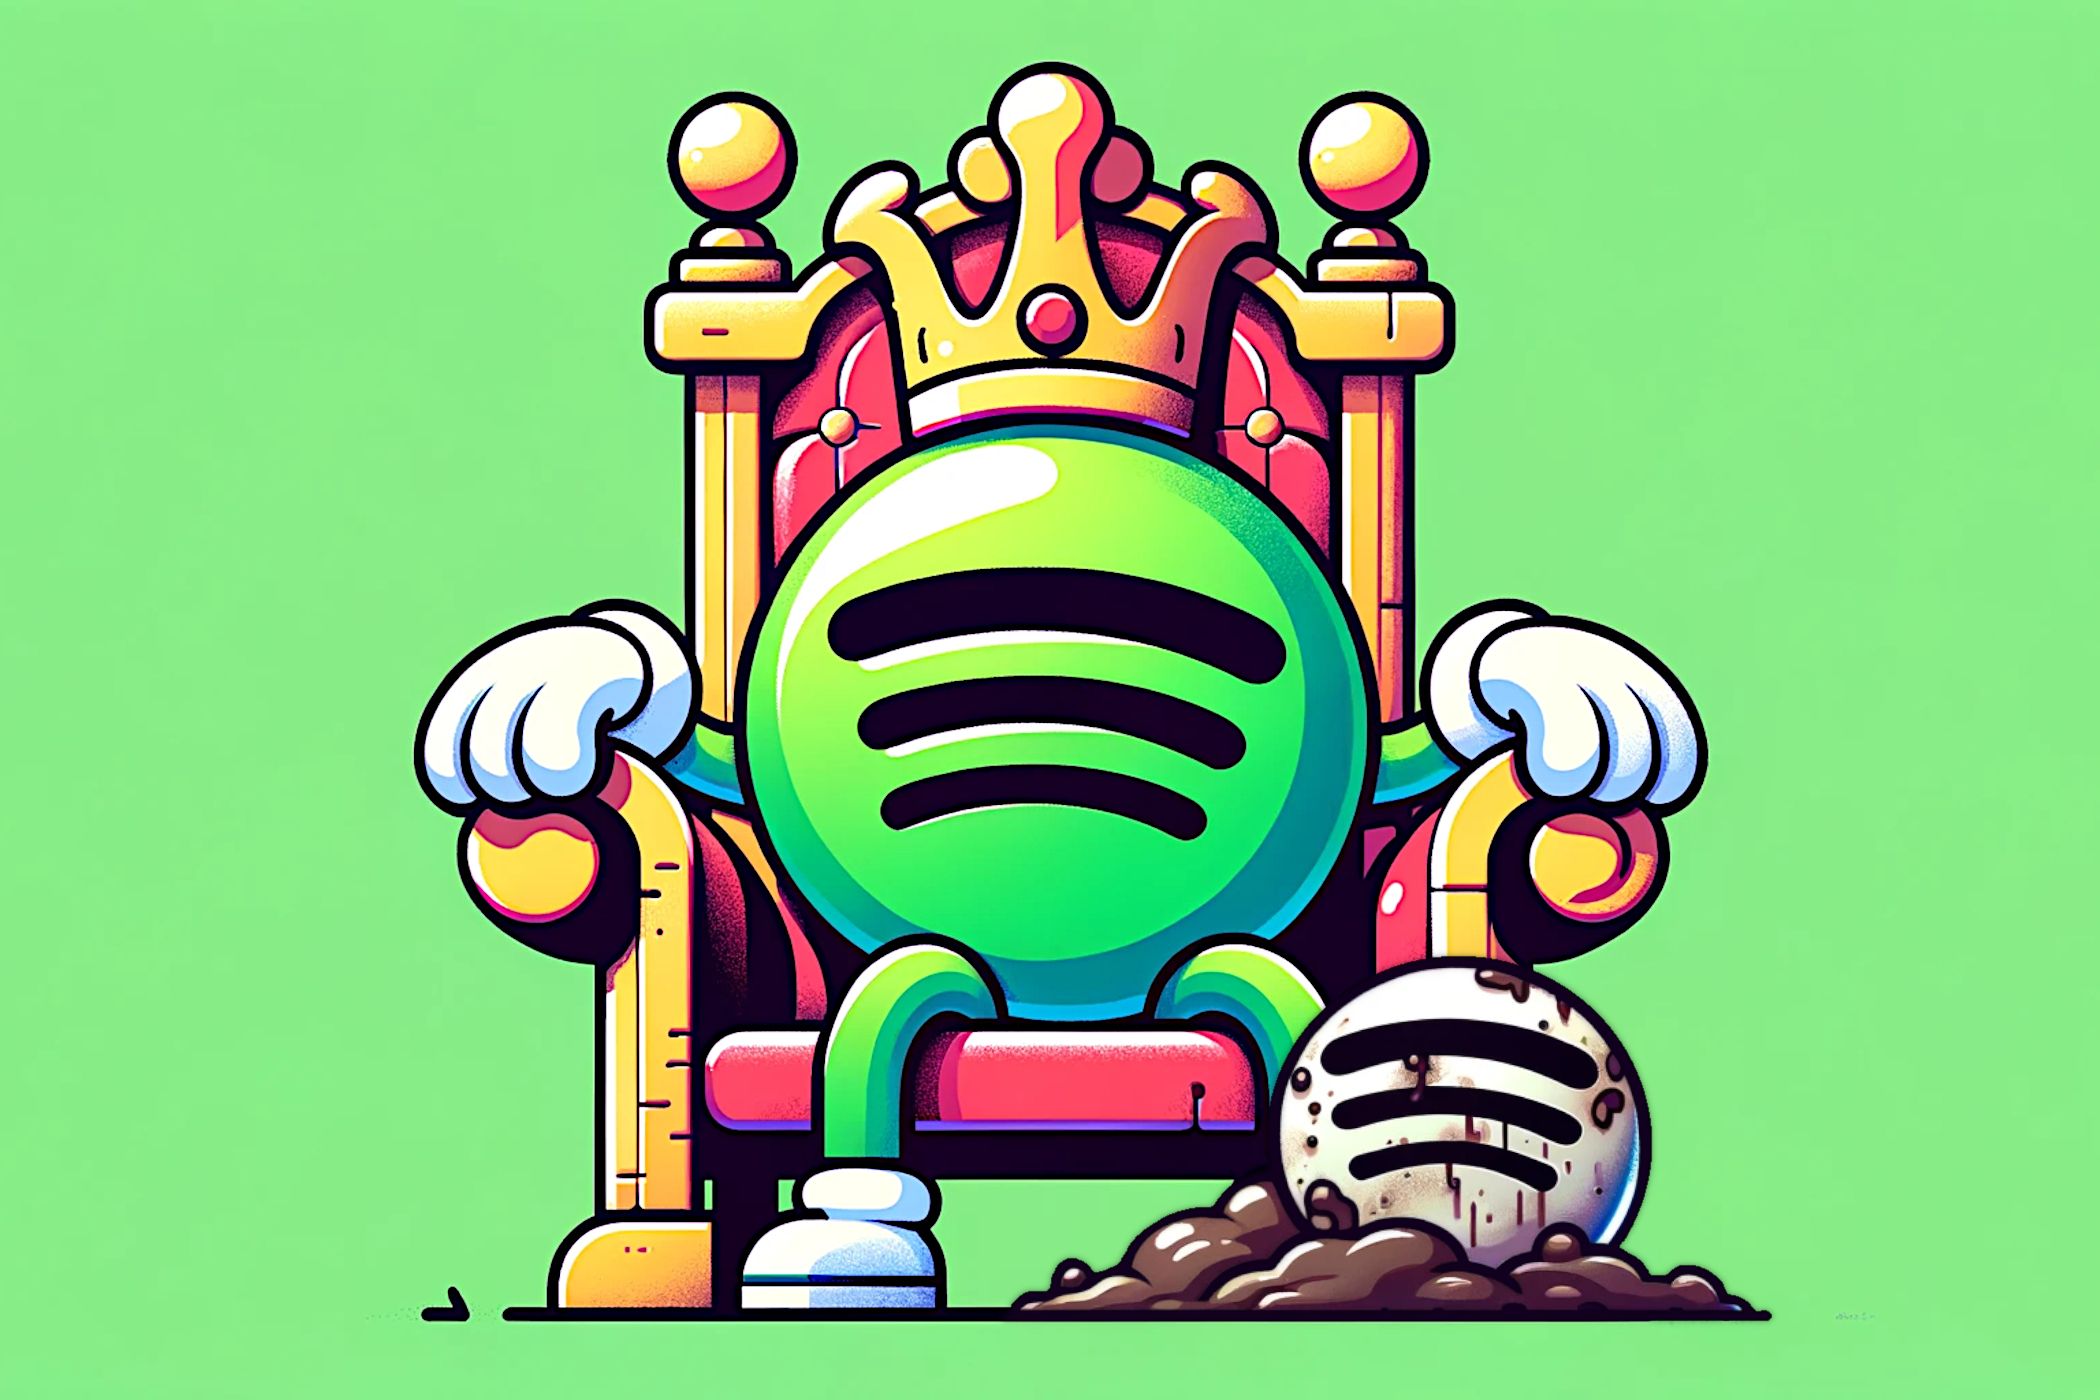 Spotify logo on a throne.